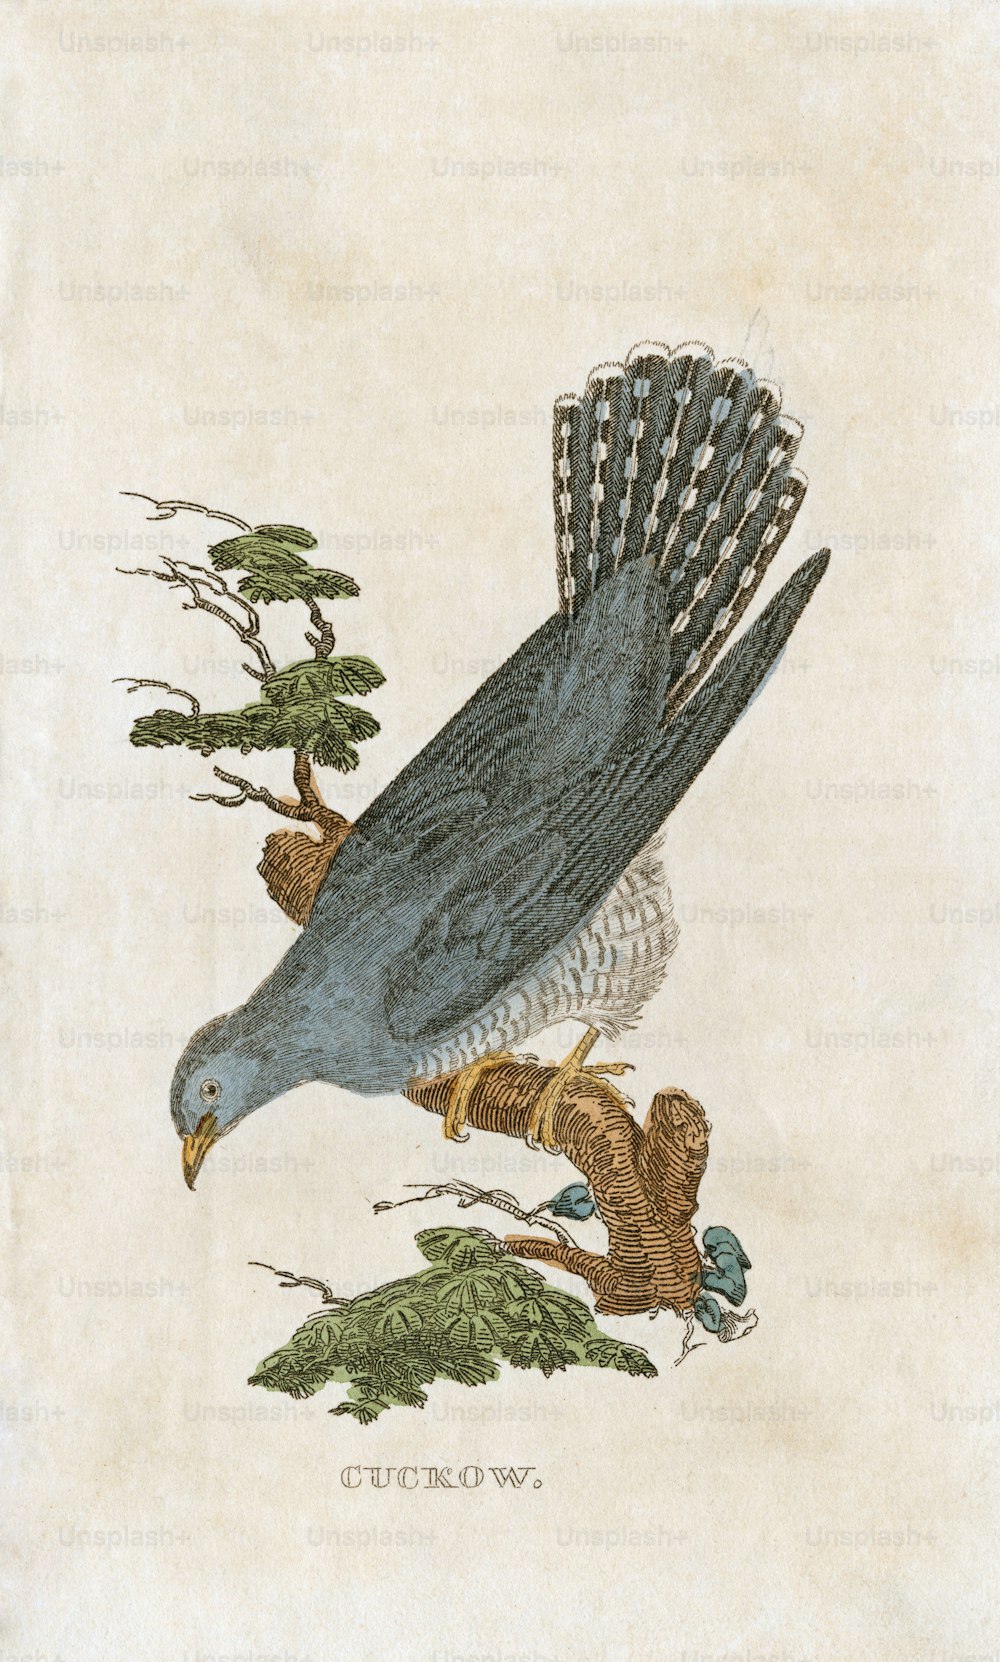 Una ilustración de placa de un 'Cuckow', o cuco, alrededor de 1850. (Foto de Hulton Archive/Getty Images)